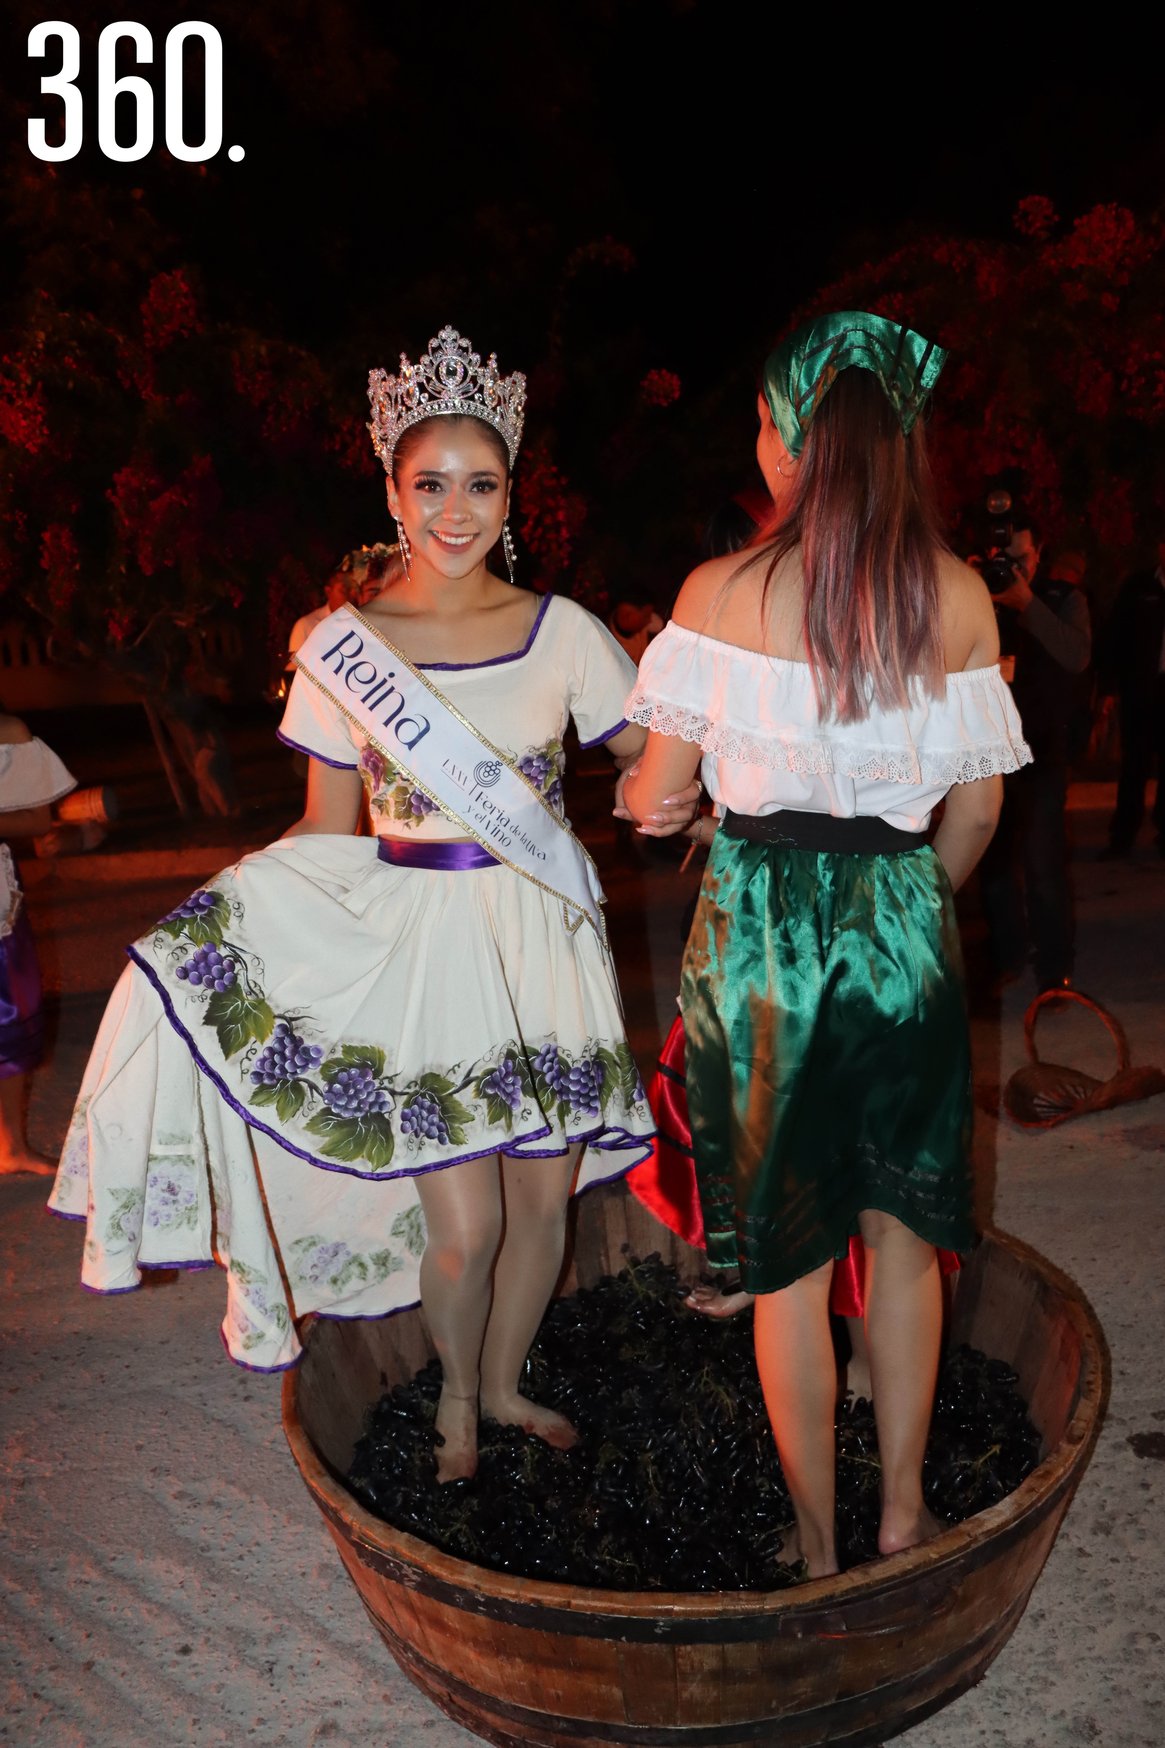 Andrea Flores Sandoval Reina de la LXXV Feria de la Uva y el Vino, y embajadora de Casa Madero., participó en la Fiesta de la Vendimia.